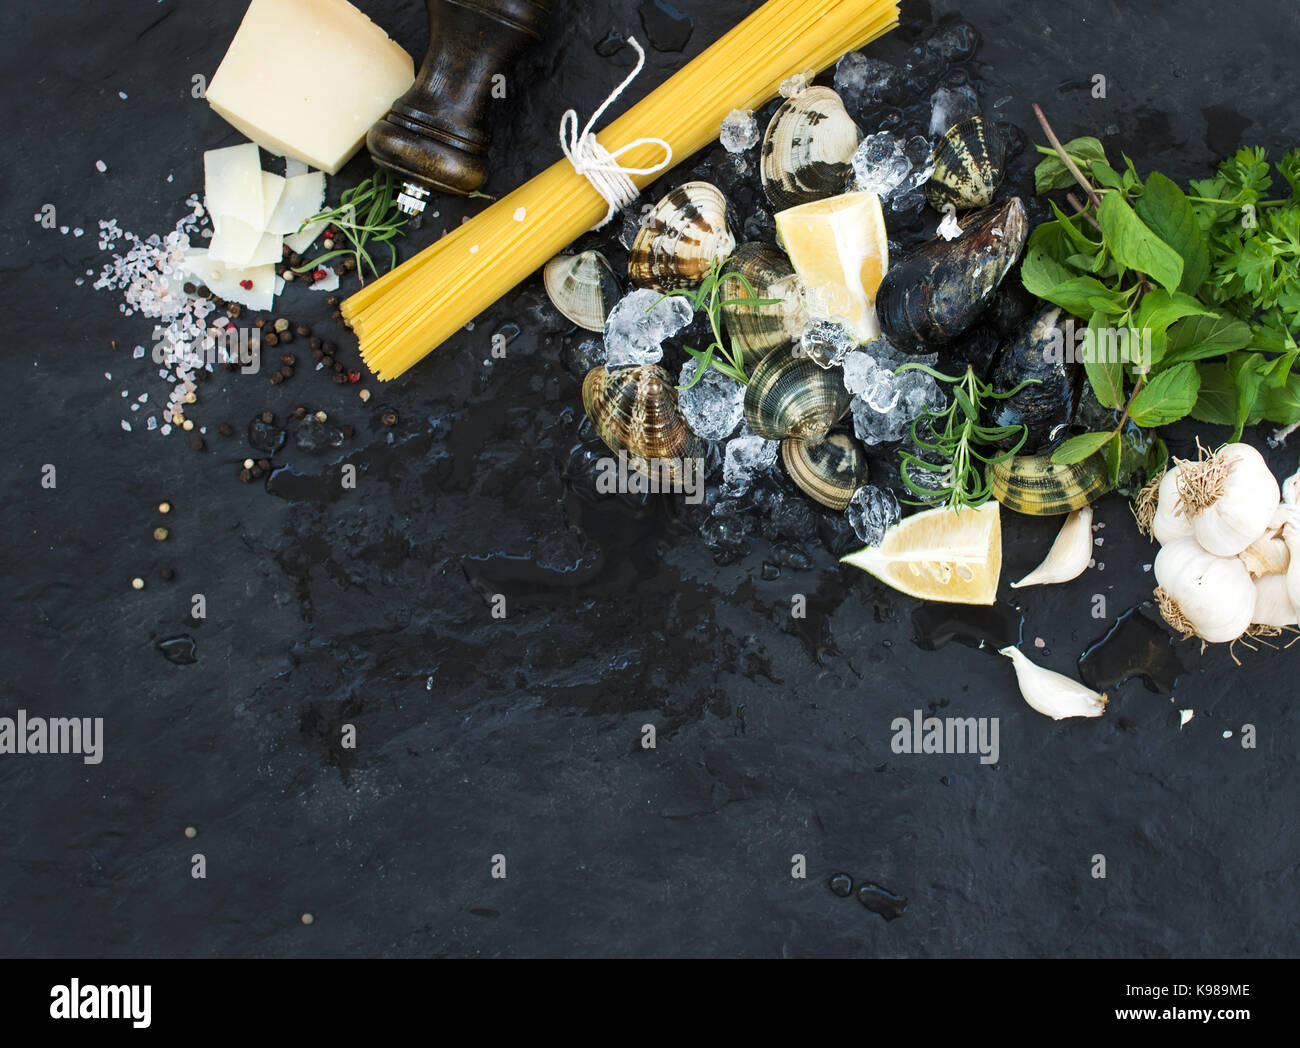 Zutaten für Spaghetti Vongole kochen. Muscheln auf abgebrochene Eis, rohe  Nudeln, Parmesan-Käse, Knoblauch, Petersilie und Zitrone über Stein  Schiefer Hintergrund, Ansicht von oben Stockfotografie - Alamy